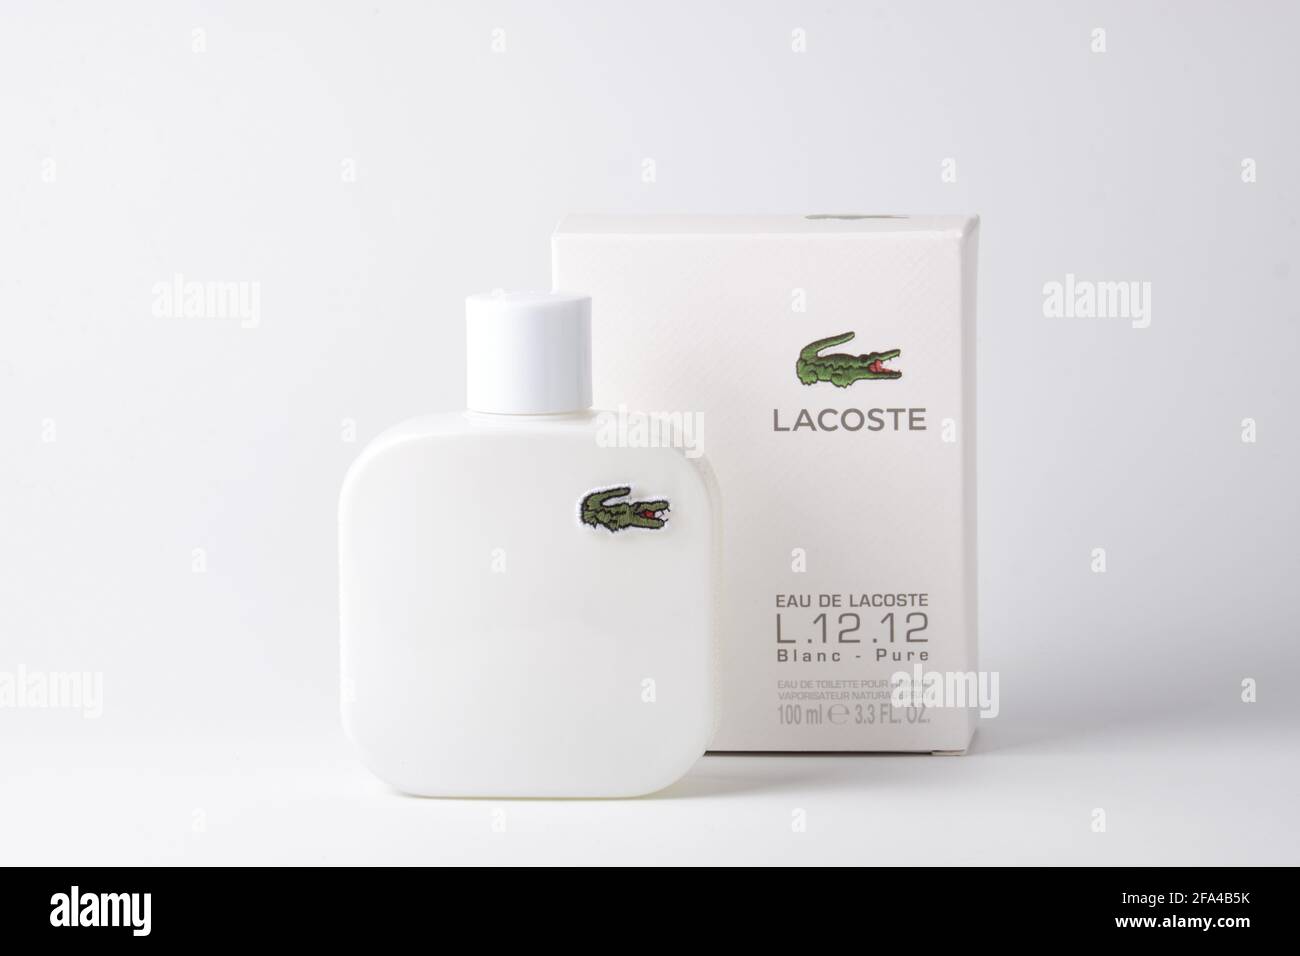 Lacoste Eau De Lacoste L.12.12 Blanc against white background Stock Photo -